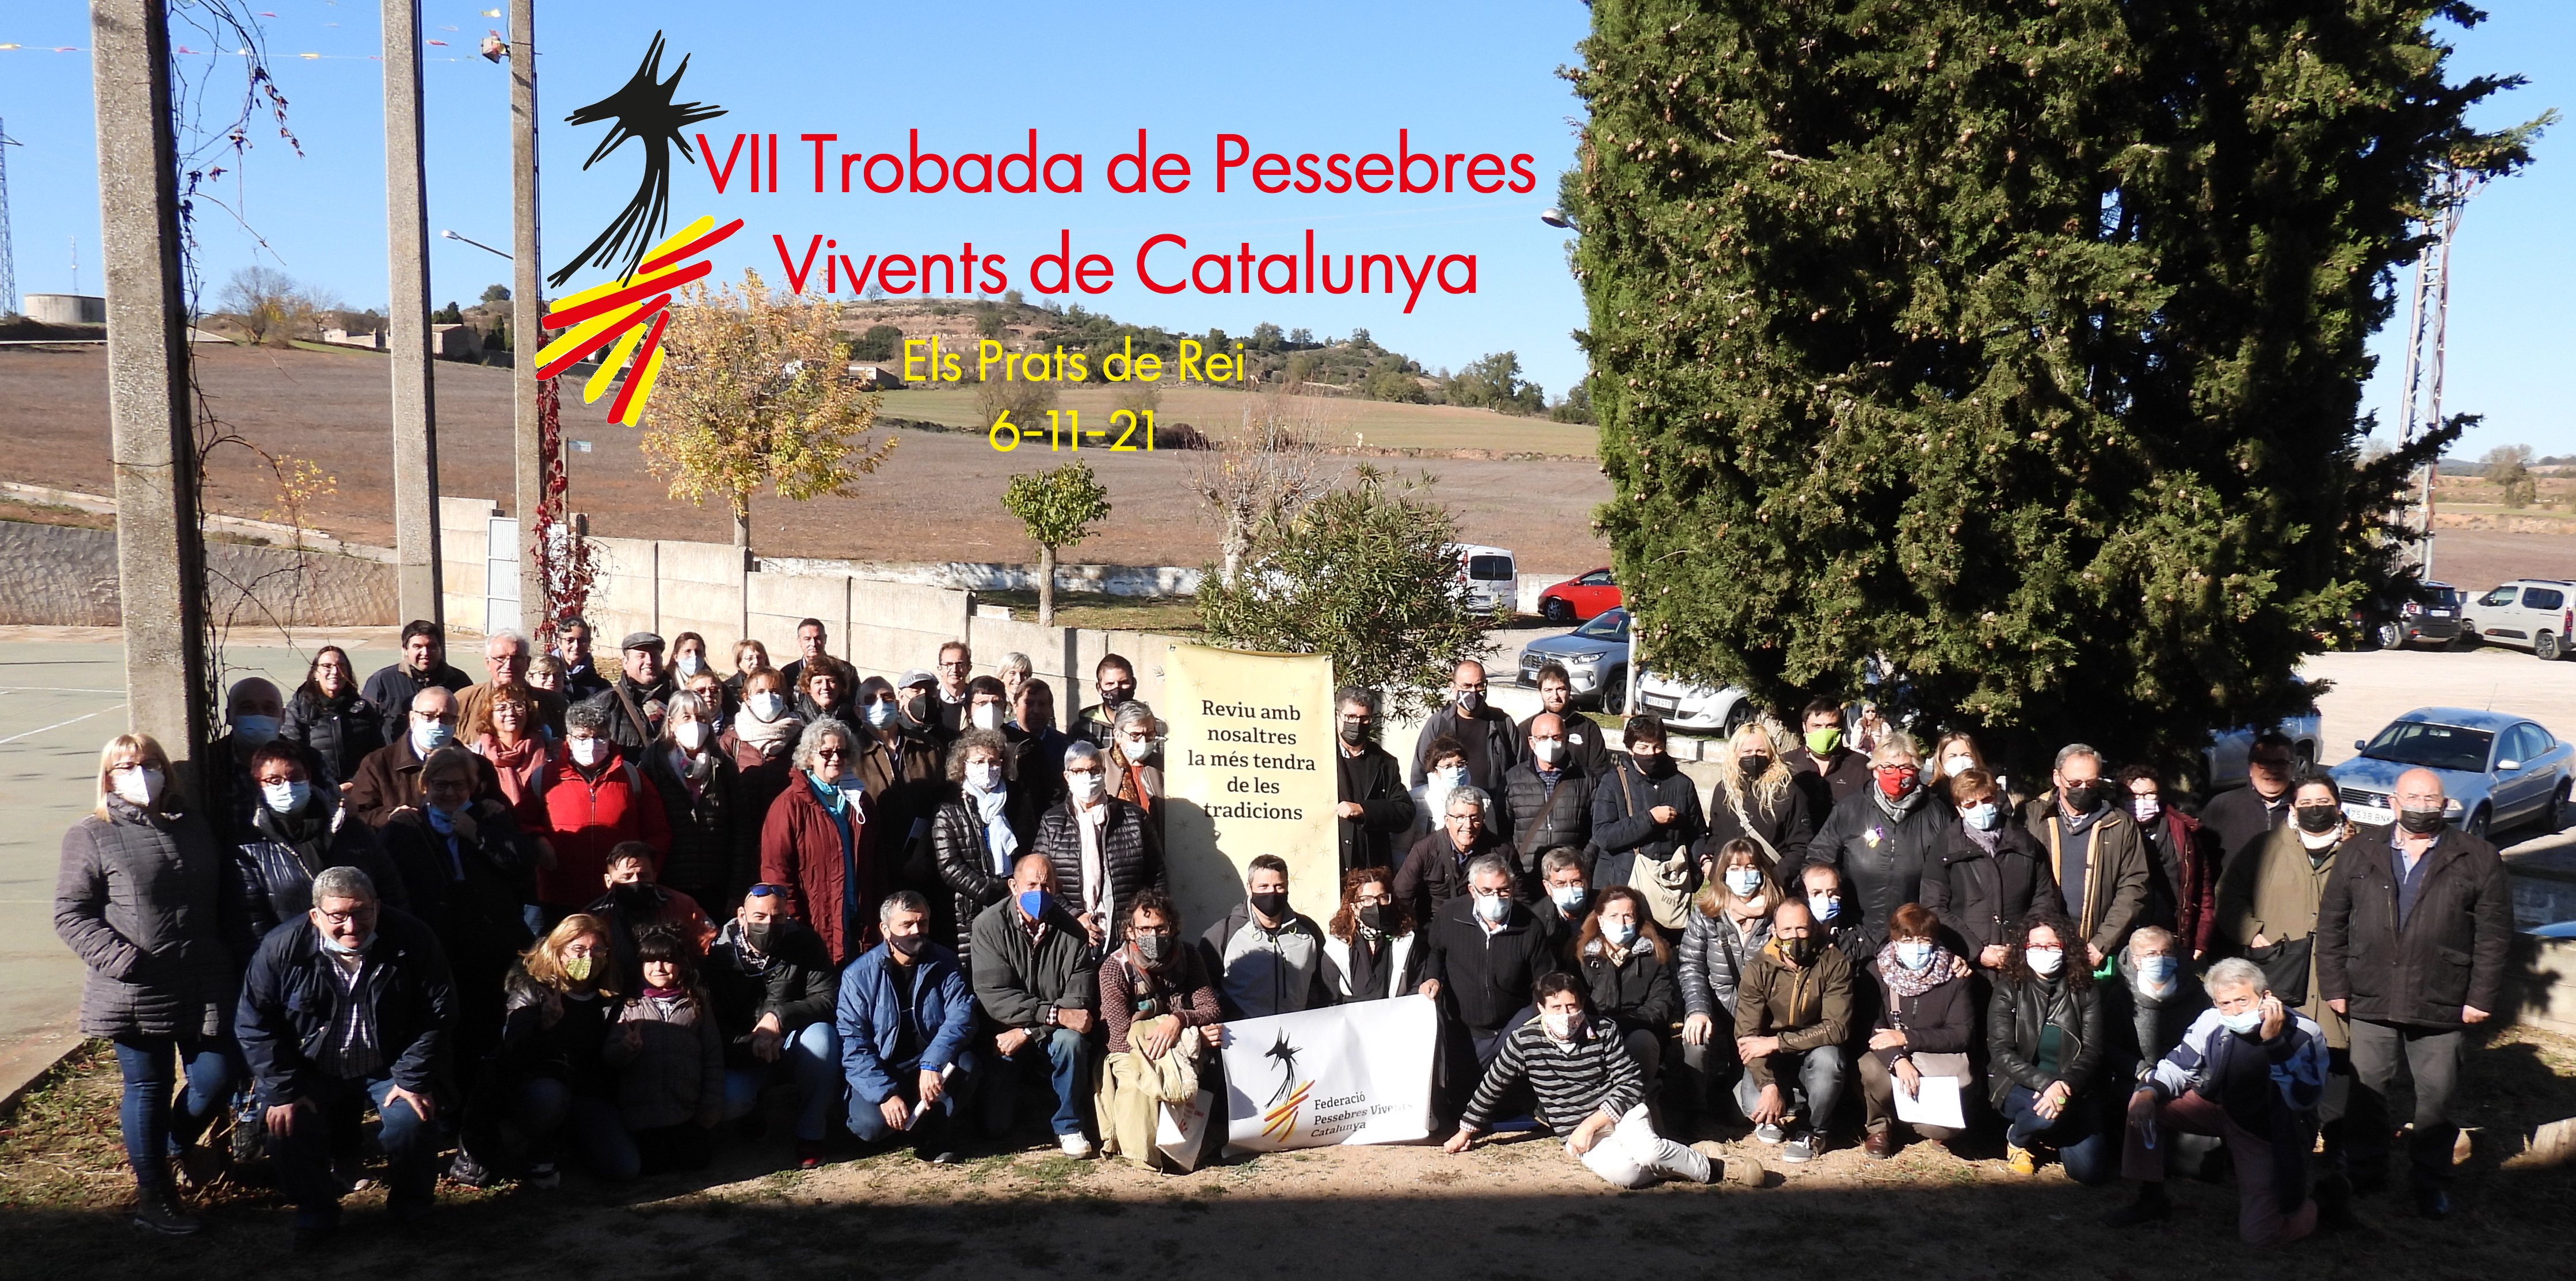 Els Prats de Rei va acollir el passat dissabte la 7a Trobada de Pessebres Vivents de Catalunya per preparar el retorn a l’activitat aquest Nadal